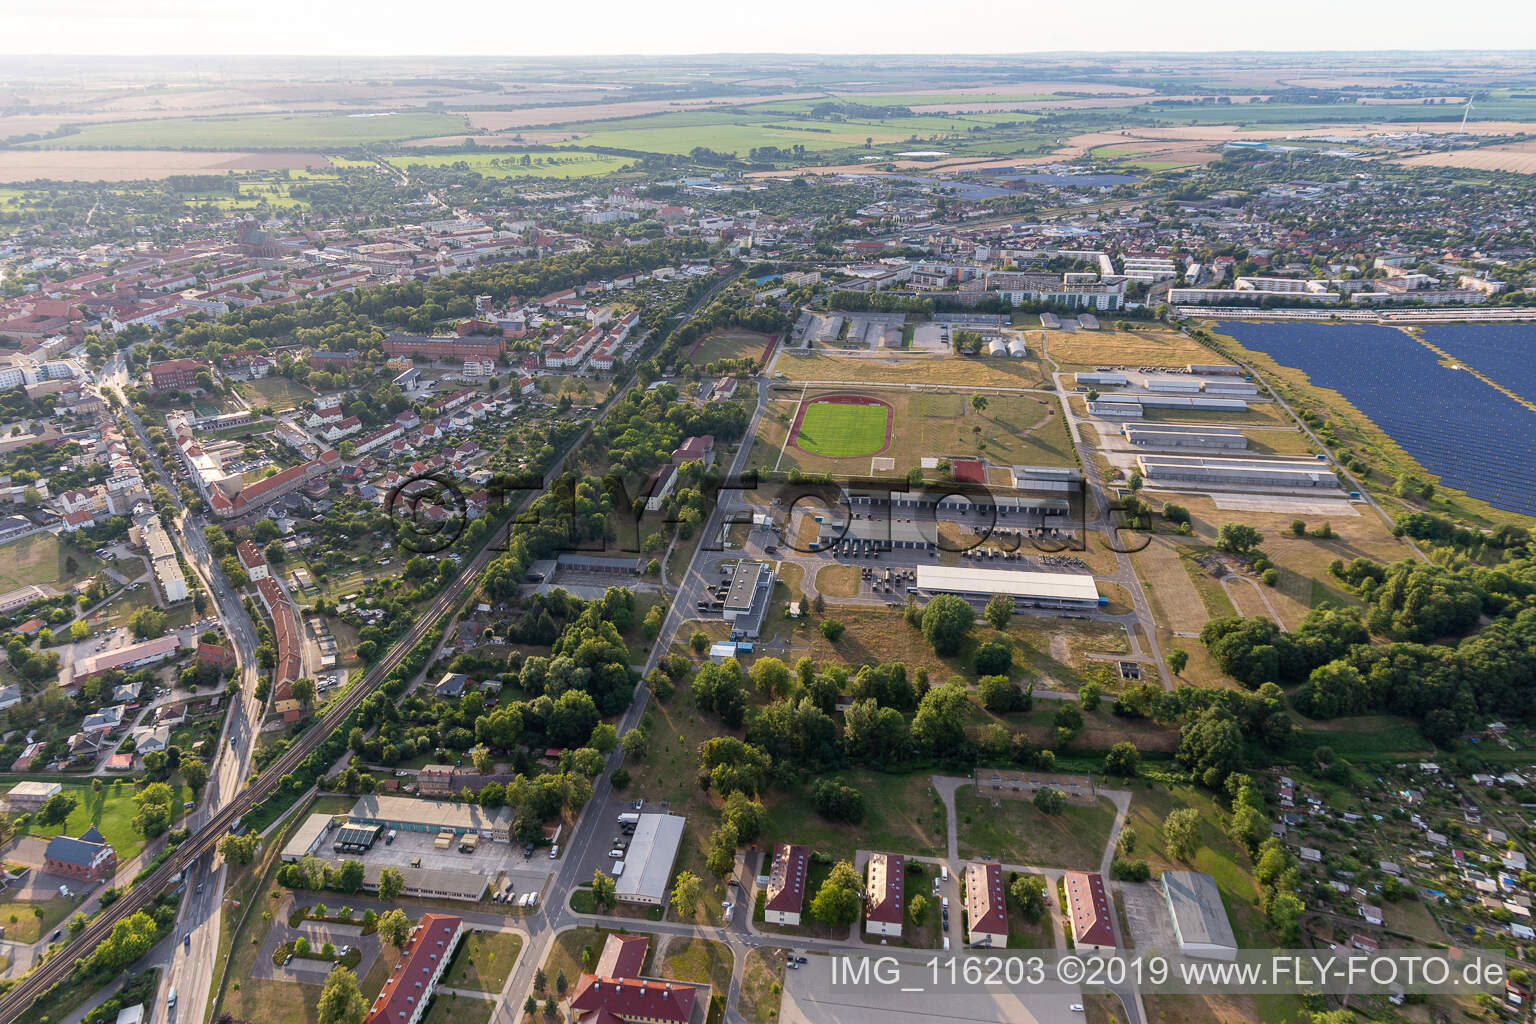 Vue aérienne de Caserne Uckermark à Prenzlau dans le département Brandebourg, Allemagne